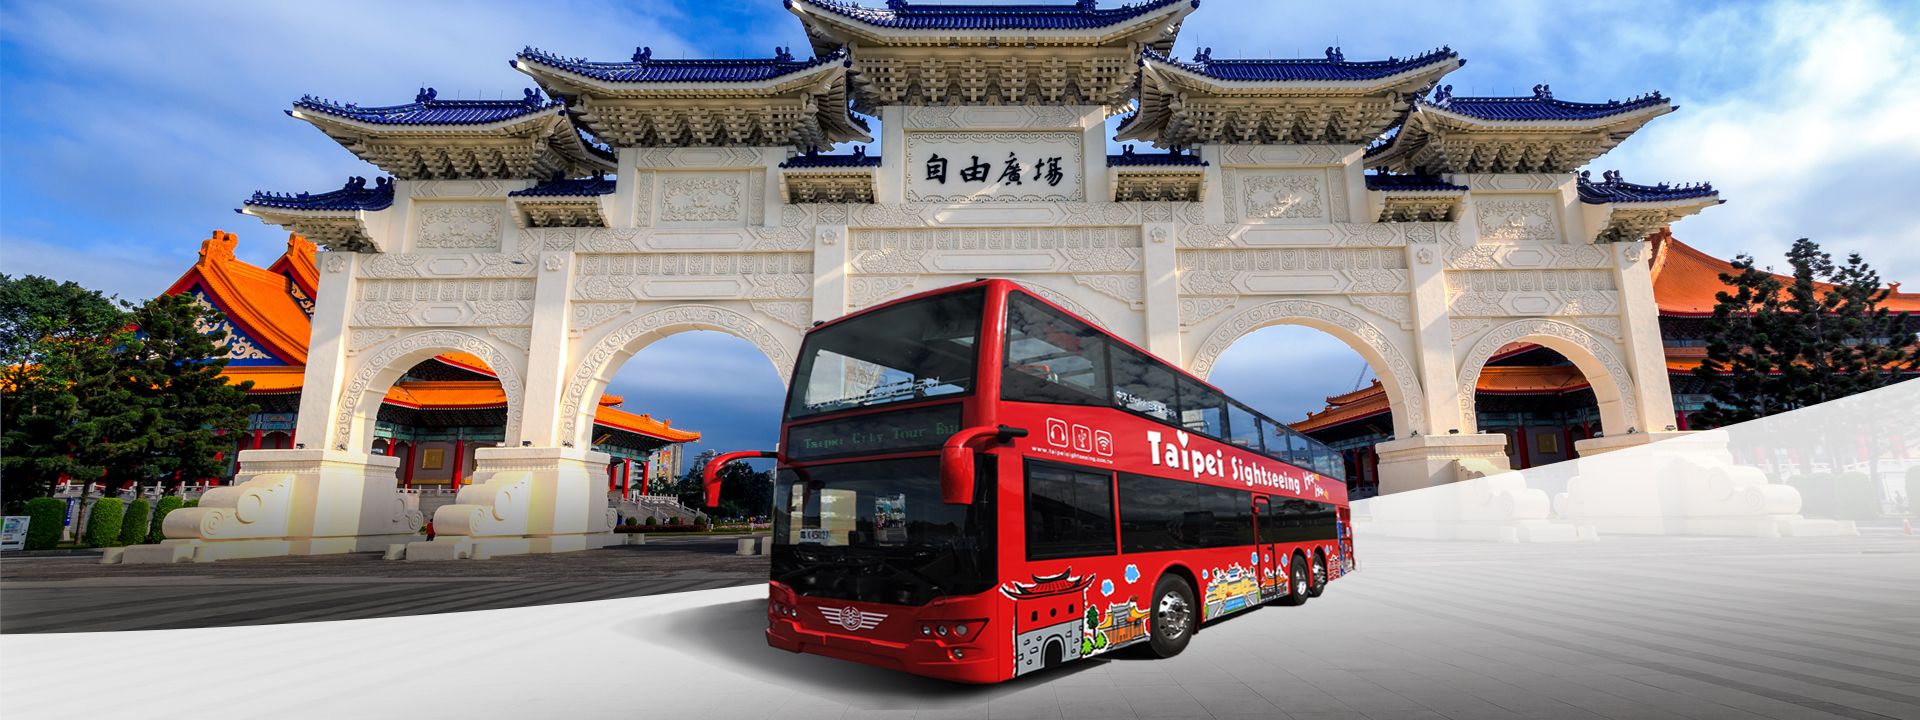 Imagen del tour: Taipei Double Decker Sightseeing Bus Tour